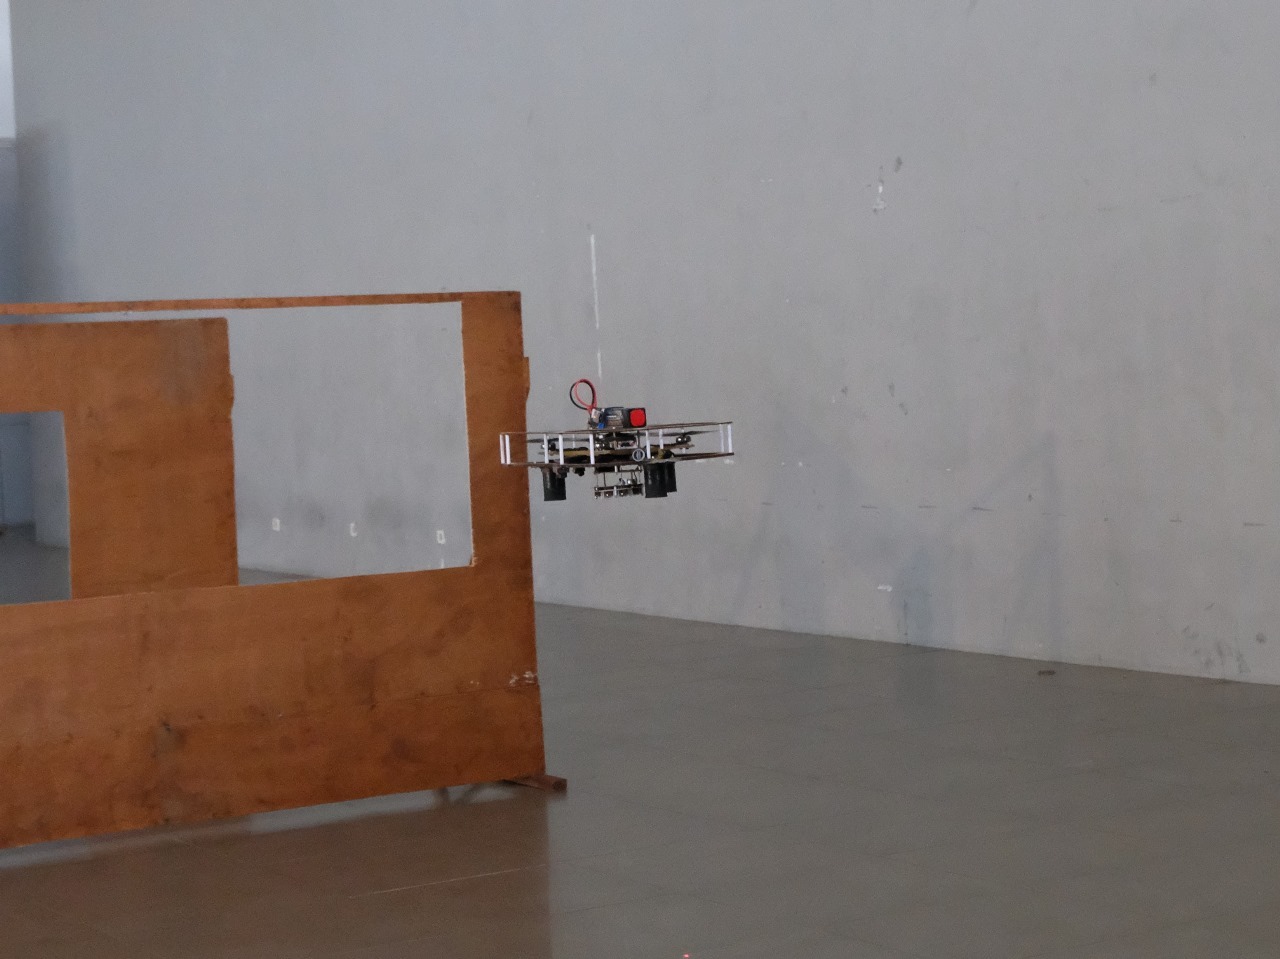 Drone Jati Sigma dalam uji coba penerbangannya di Gedung Robotika ITS